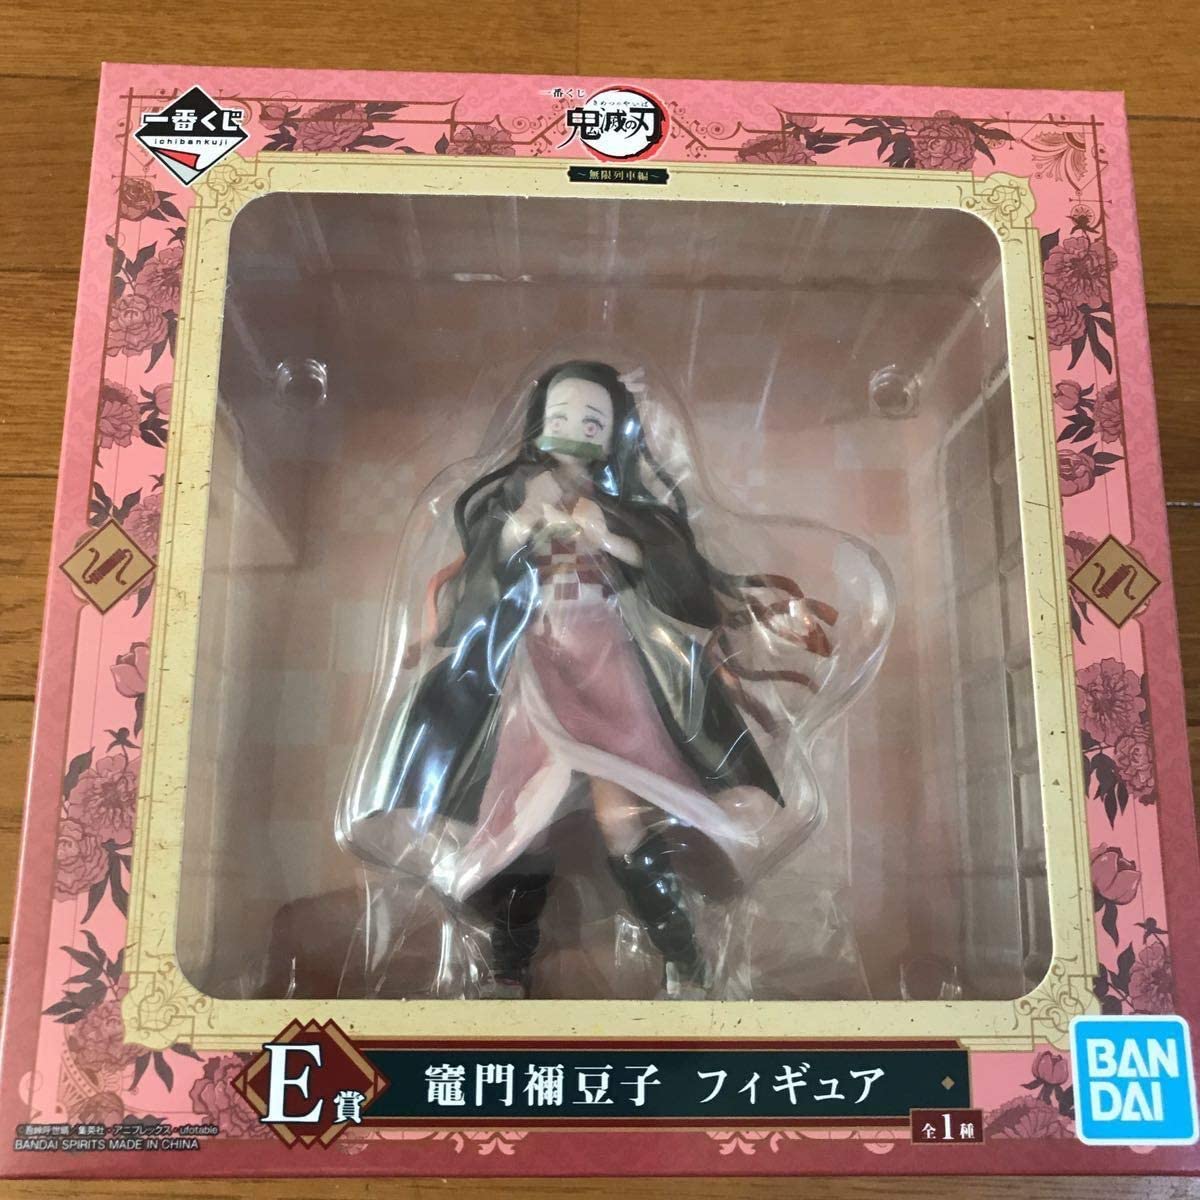 Ichiban Kuji Demon Slayer Mugen Train Prize E Nezuko Figure Buy